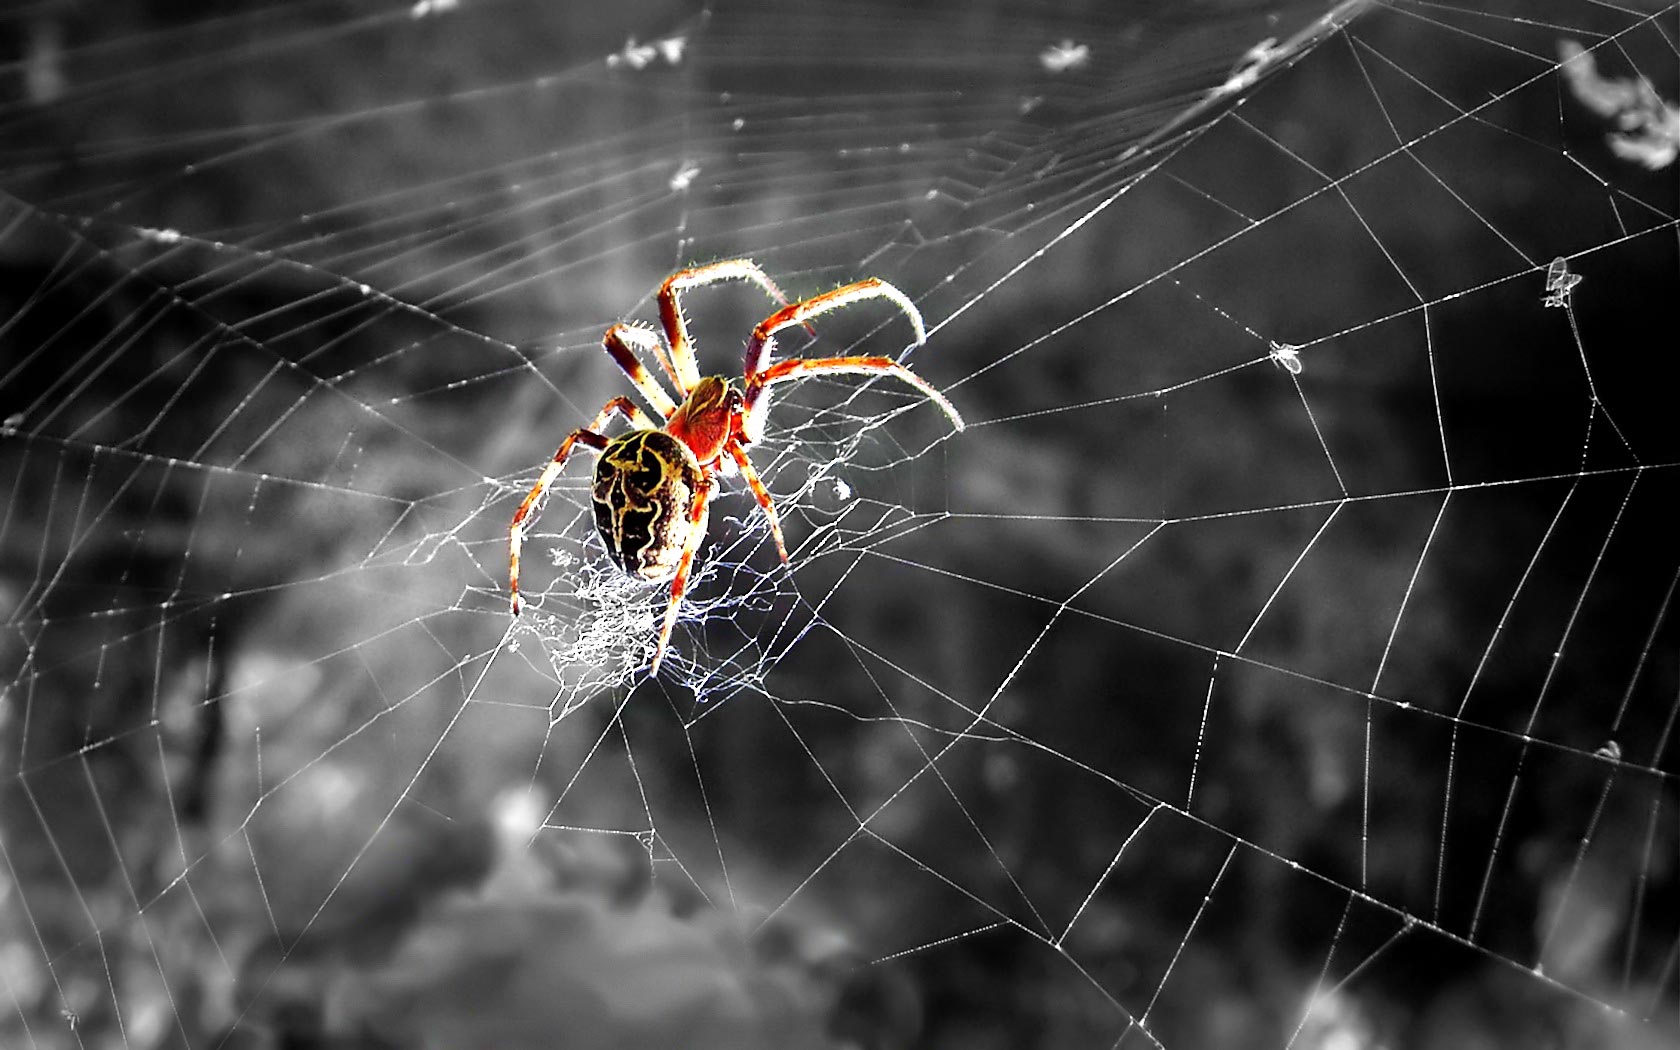  Spider widescreen wallpaper High Definition Wallpaper HD